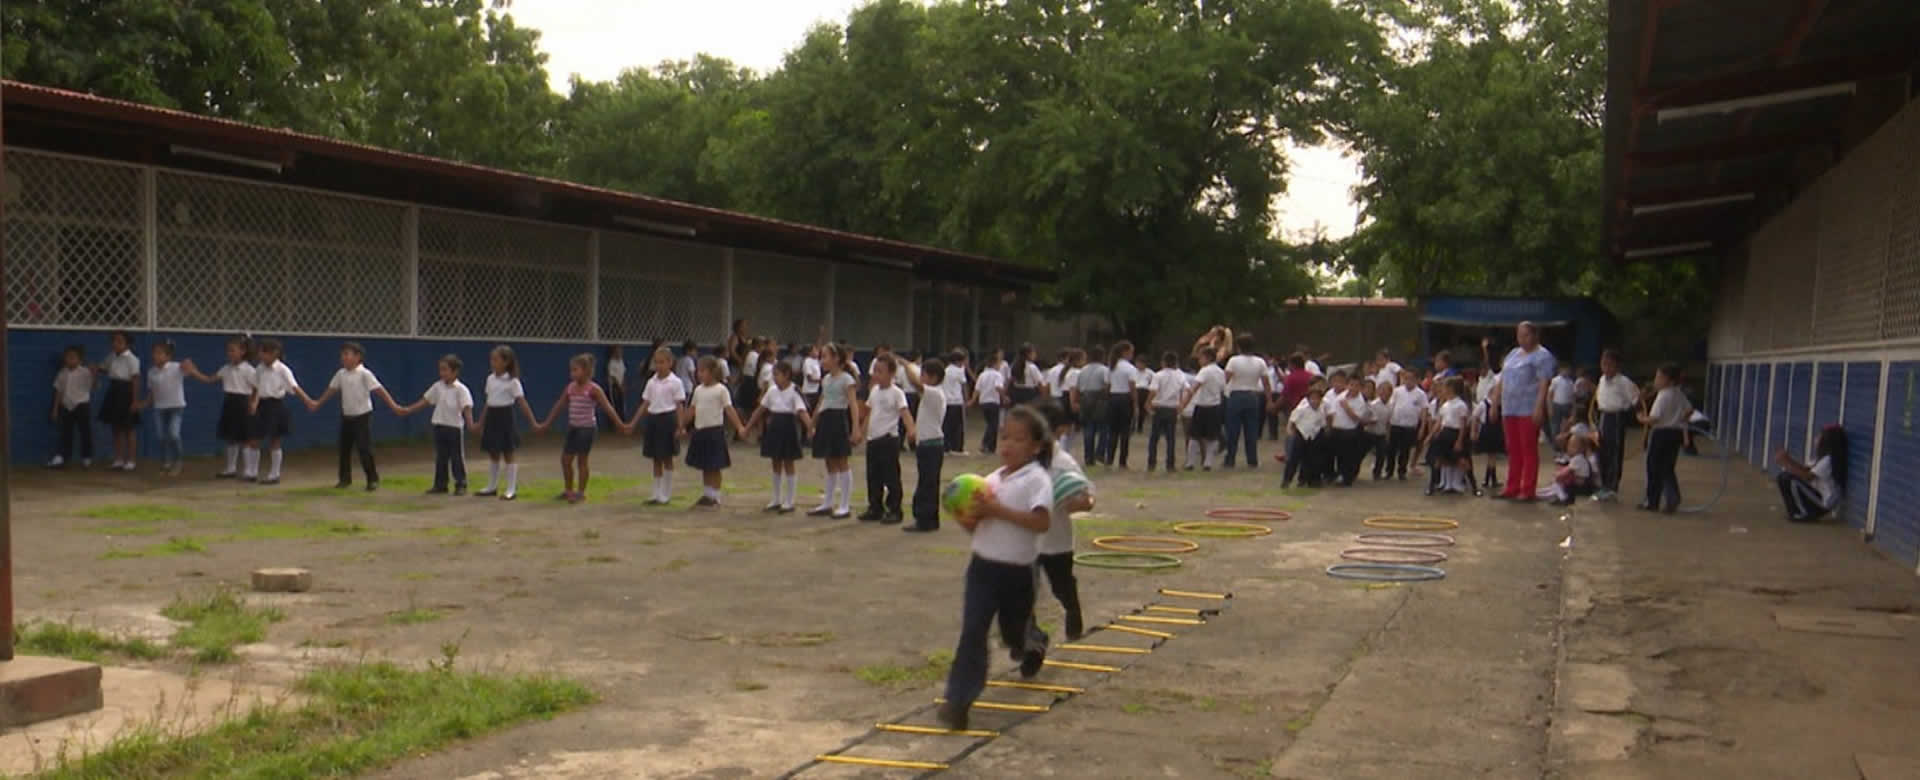 Comunidad educativa del Wisconsin en Managua apuesta por mentes sanas